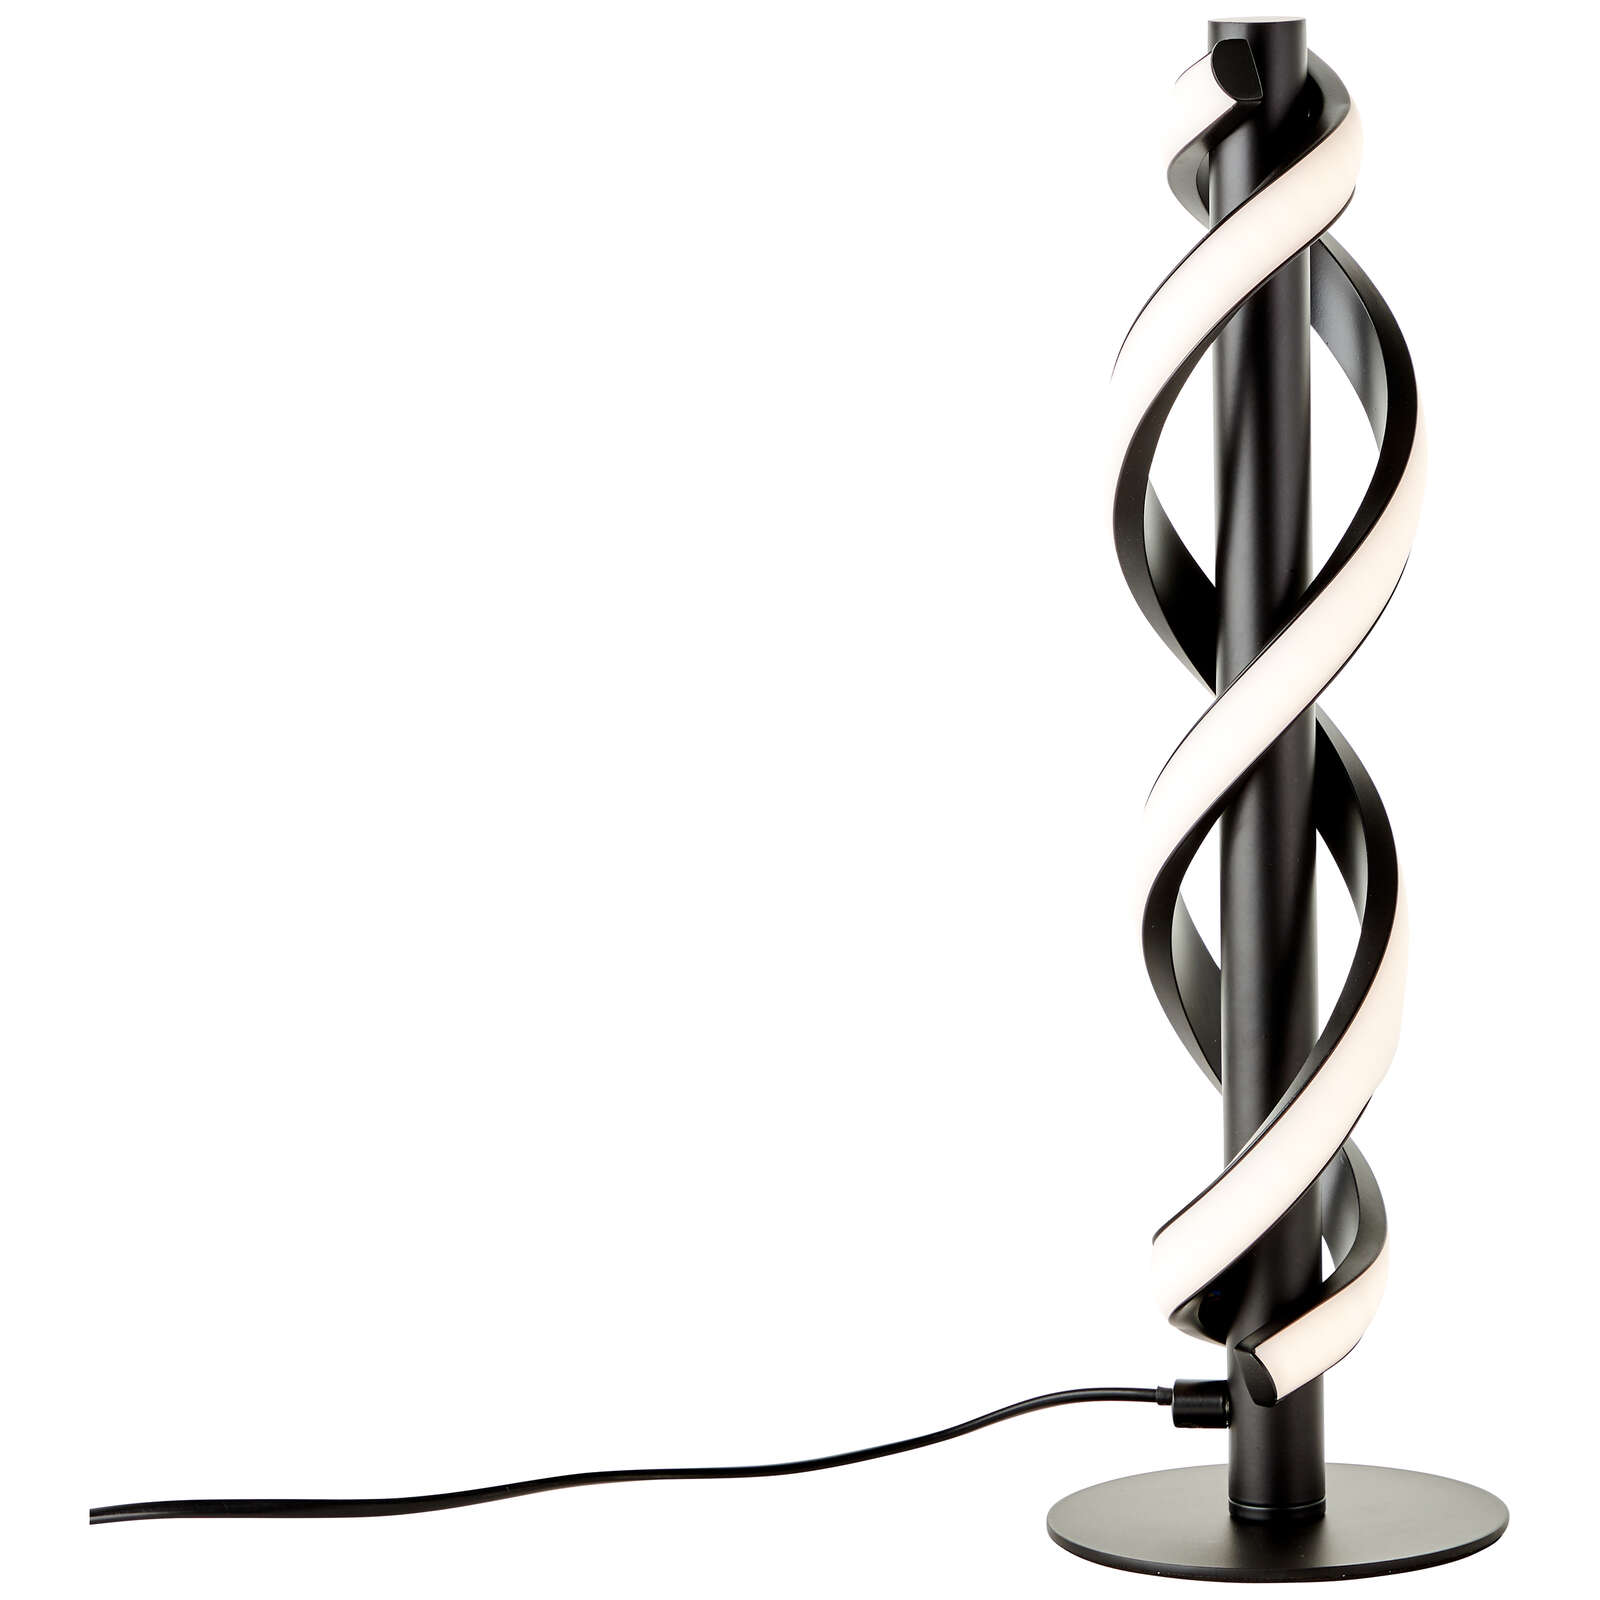             Kunststof tafellamp - Alexander 1 - Zwart
        